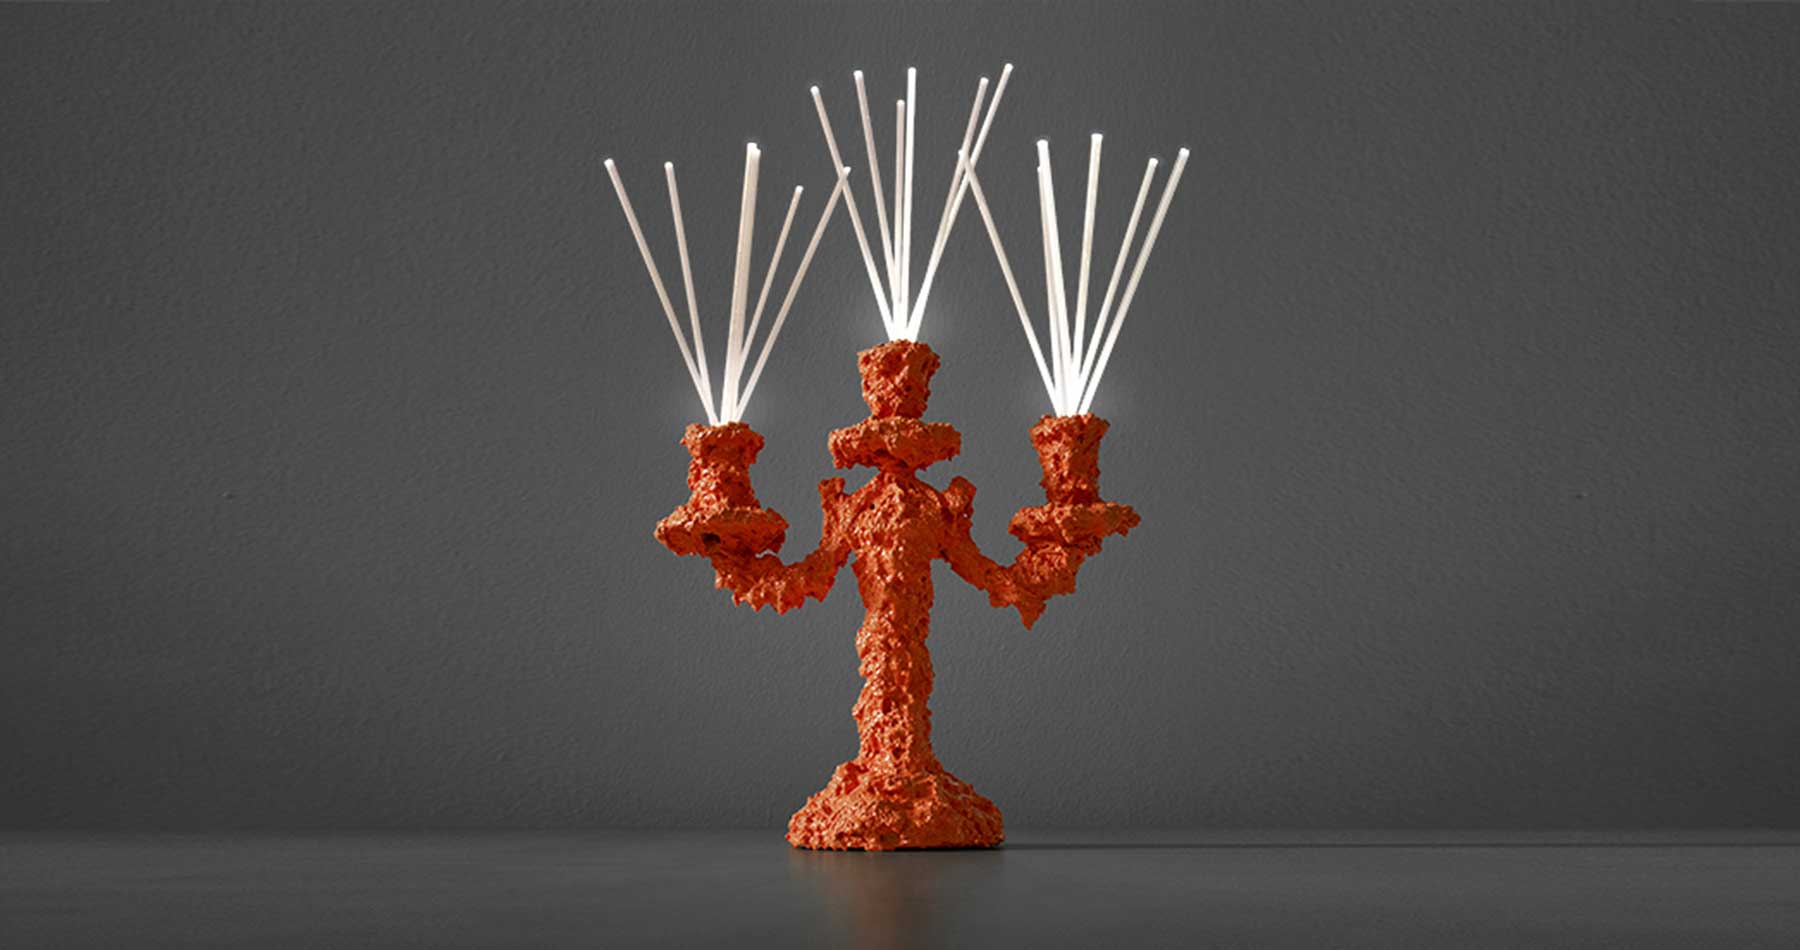 Lamp Secret light, orange, photo 1, design by Guerraz, production by LuceControCorrente